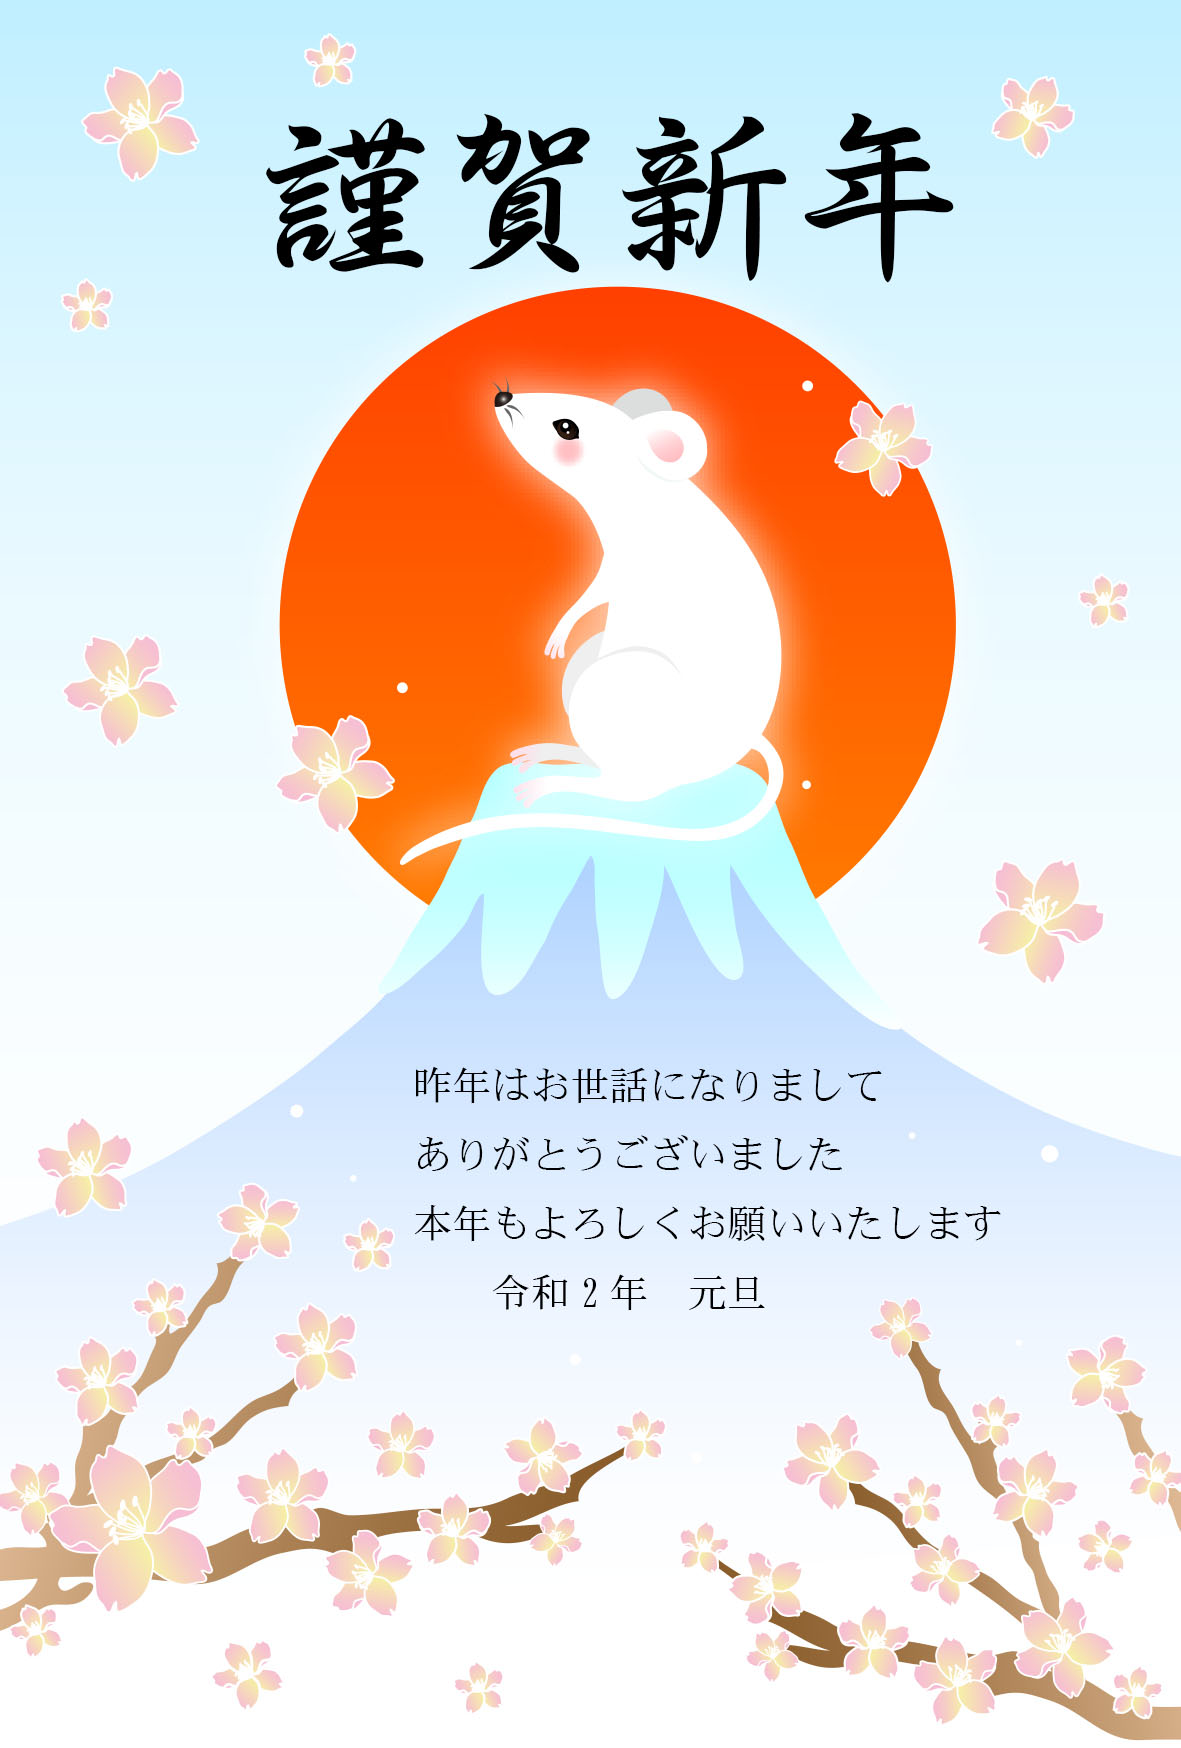 ねずみと富士山 年賀状テンプレート素材 年賀状桜屋